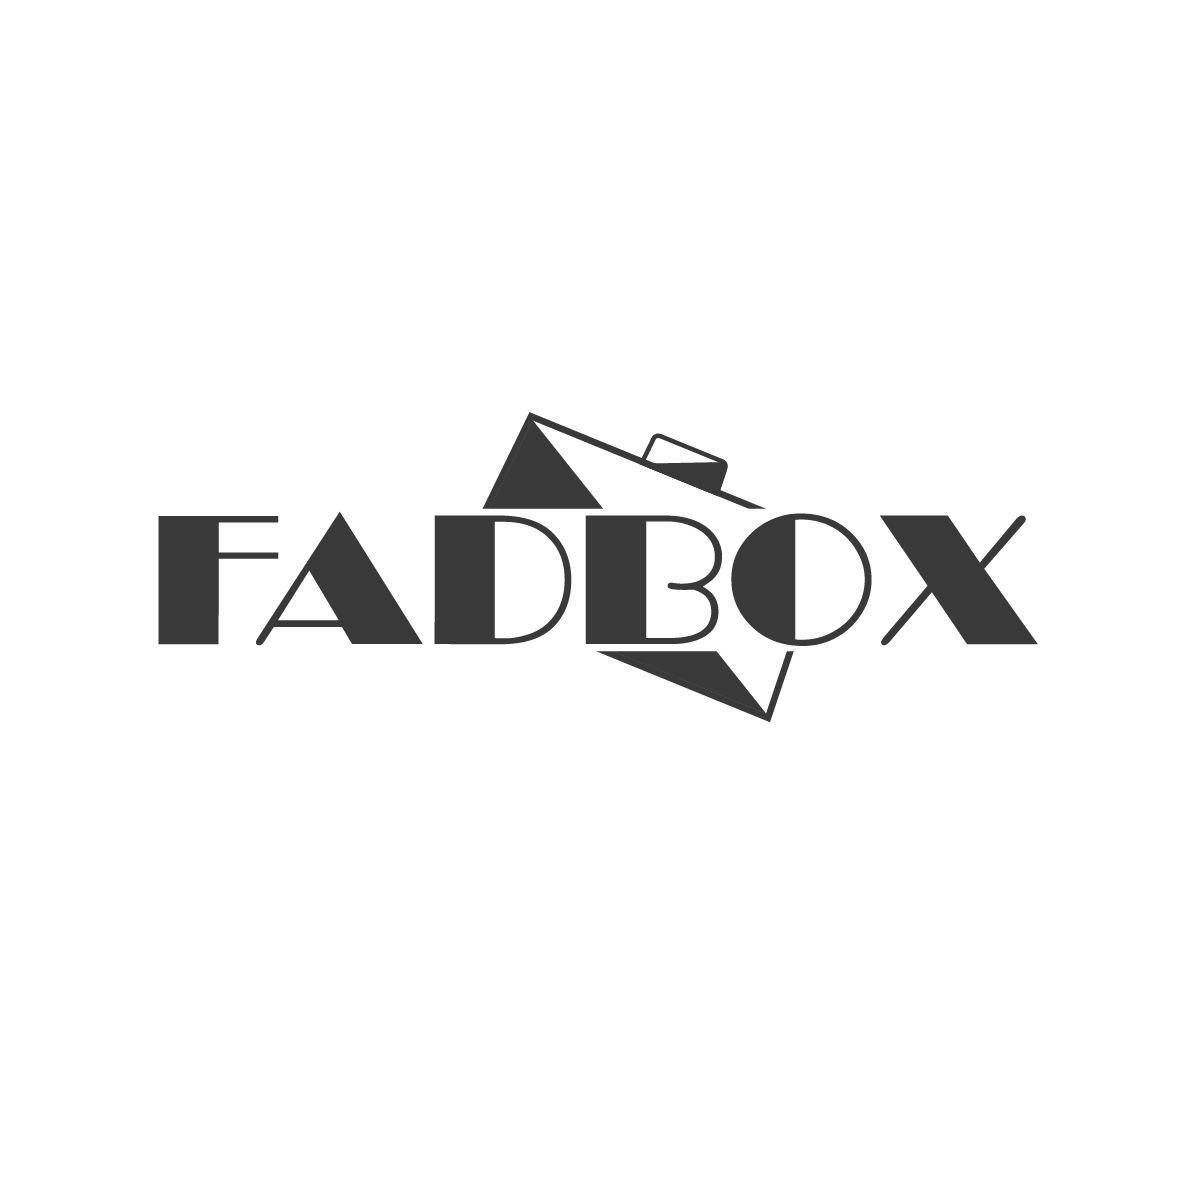 FADBOX